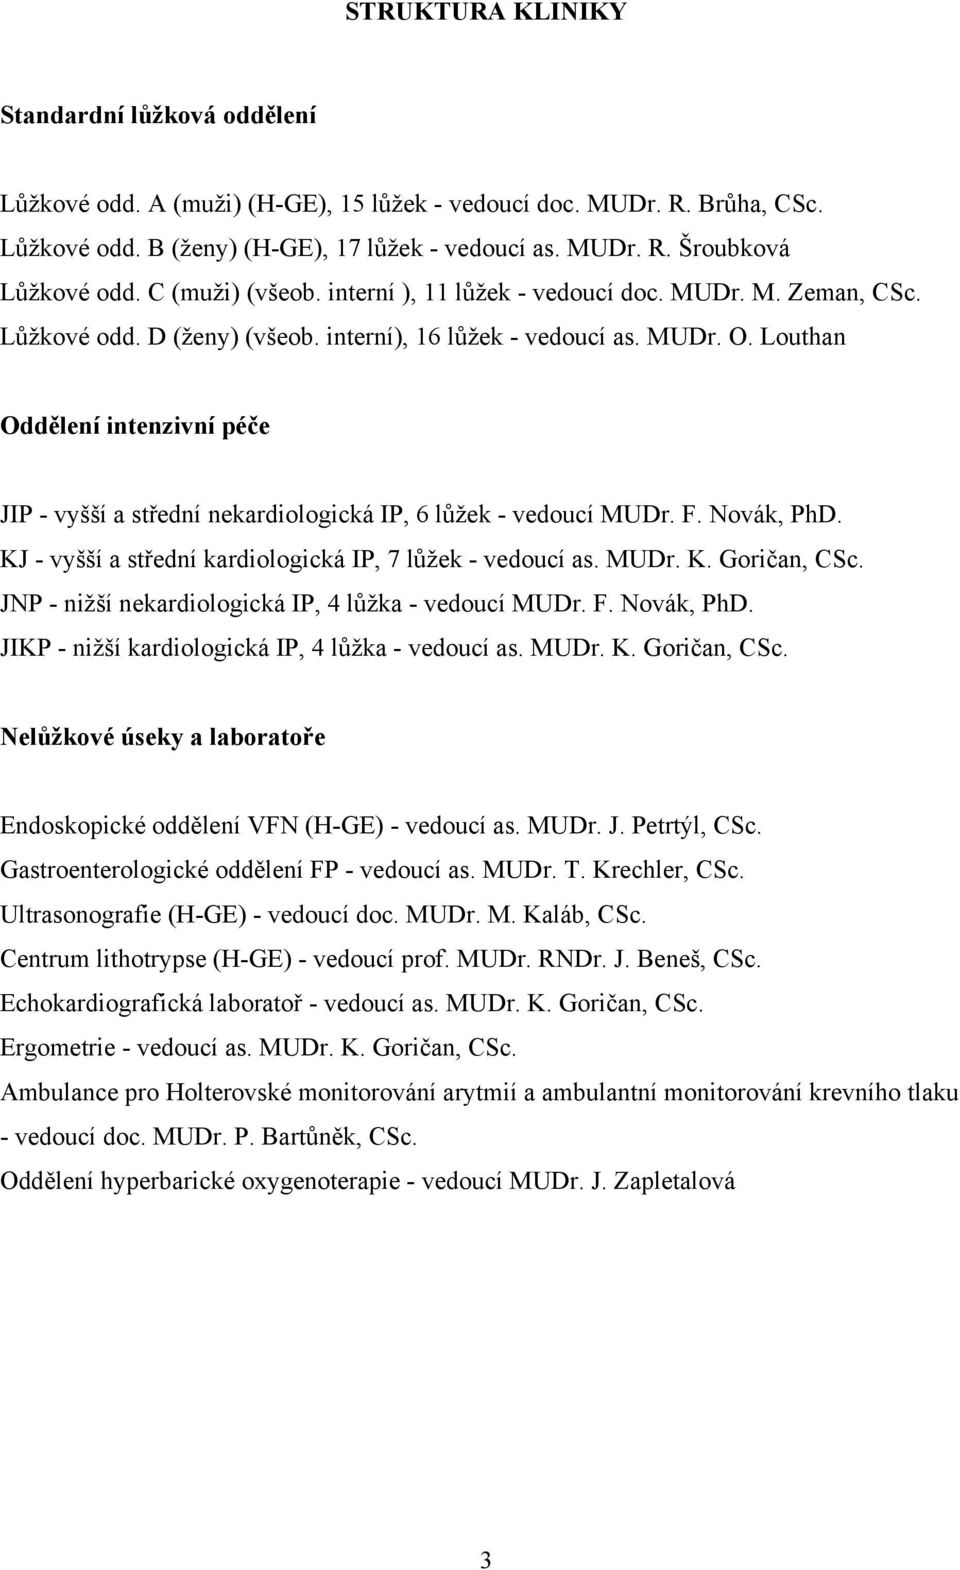 Louthan Oddělení intenzivní péče JIP - vyšší a střední nekardiologická IP, 6 lůžek - vedoucí MUDr. F. Novák, PhD. KJ - vyšší a střední kardiologická IP, 7 lůžek - vedoucí as. MUDr. K. Goričan, CSc.